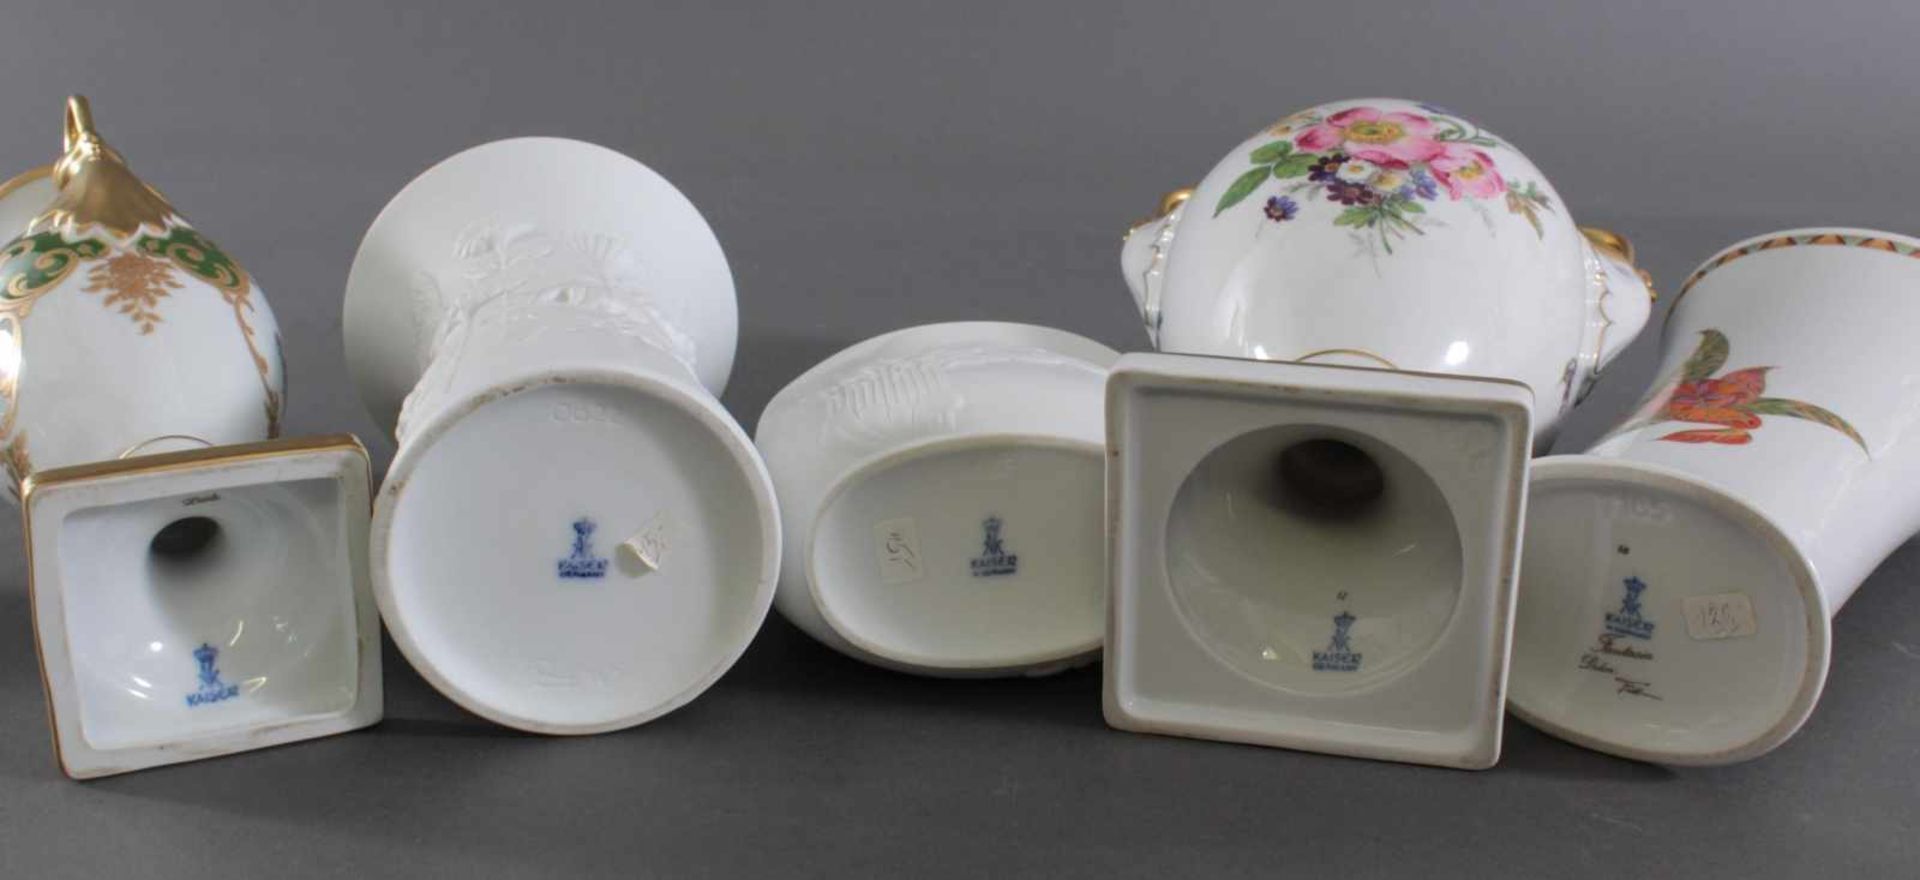 Fünf Vasen, Alboth & Kaiser PorzellanPorzellan, 2x Schwanenhenkelvase, Vorder- und Rückseite - Bild 3 aus 3